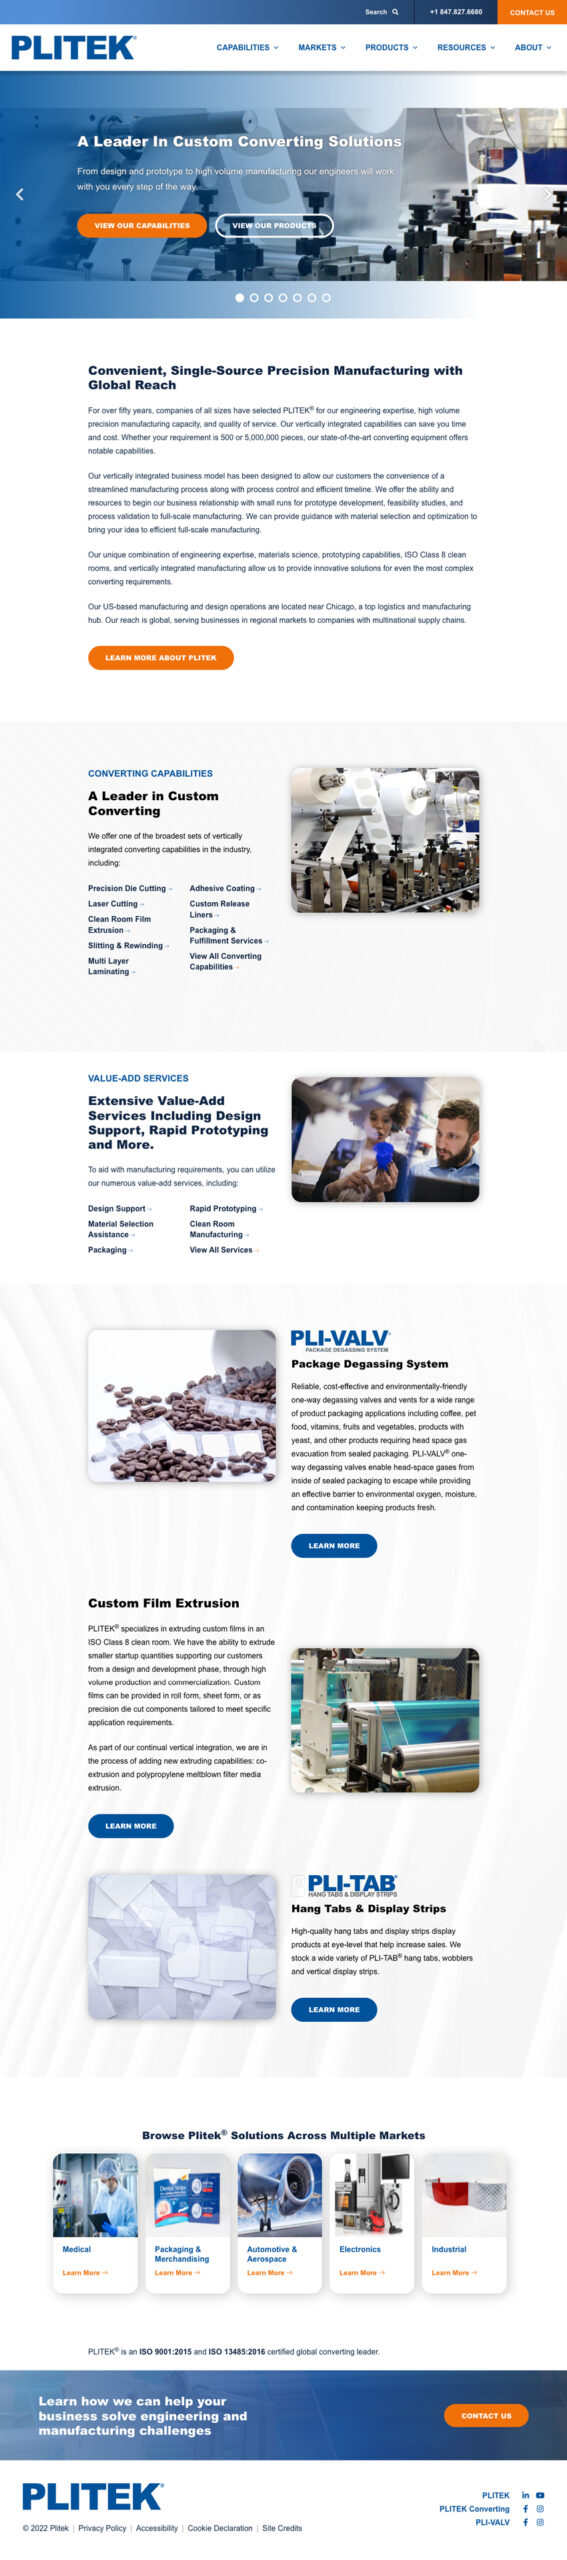 Manufacturing web design example: Plitek Website Homepage